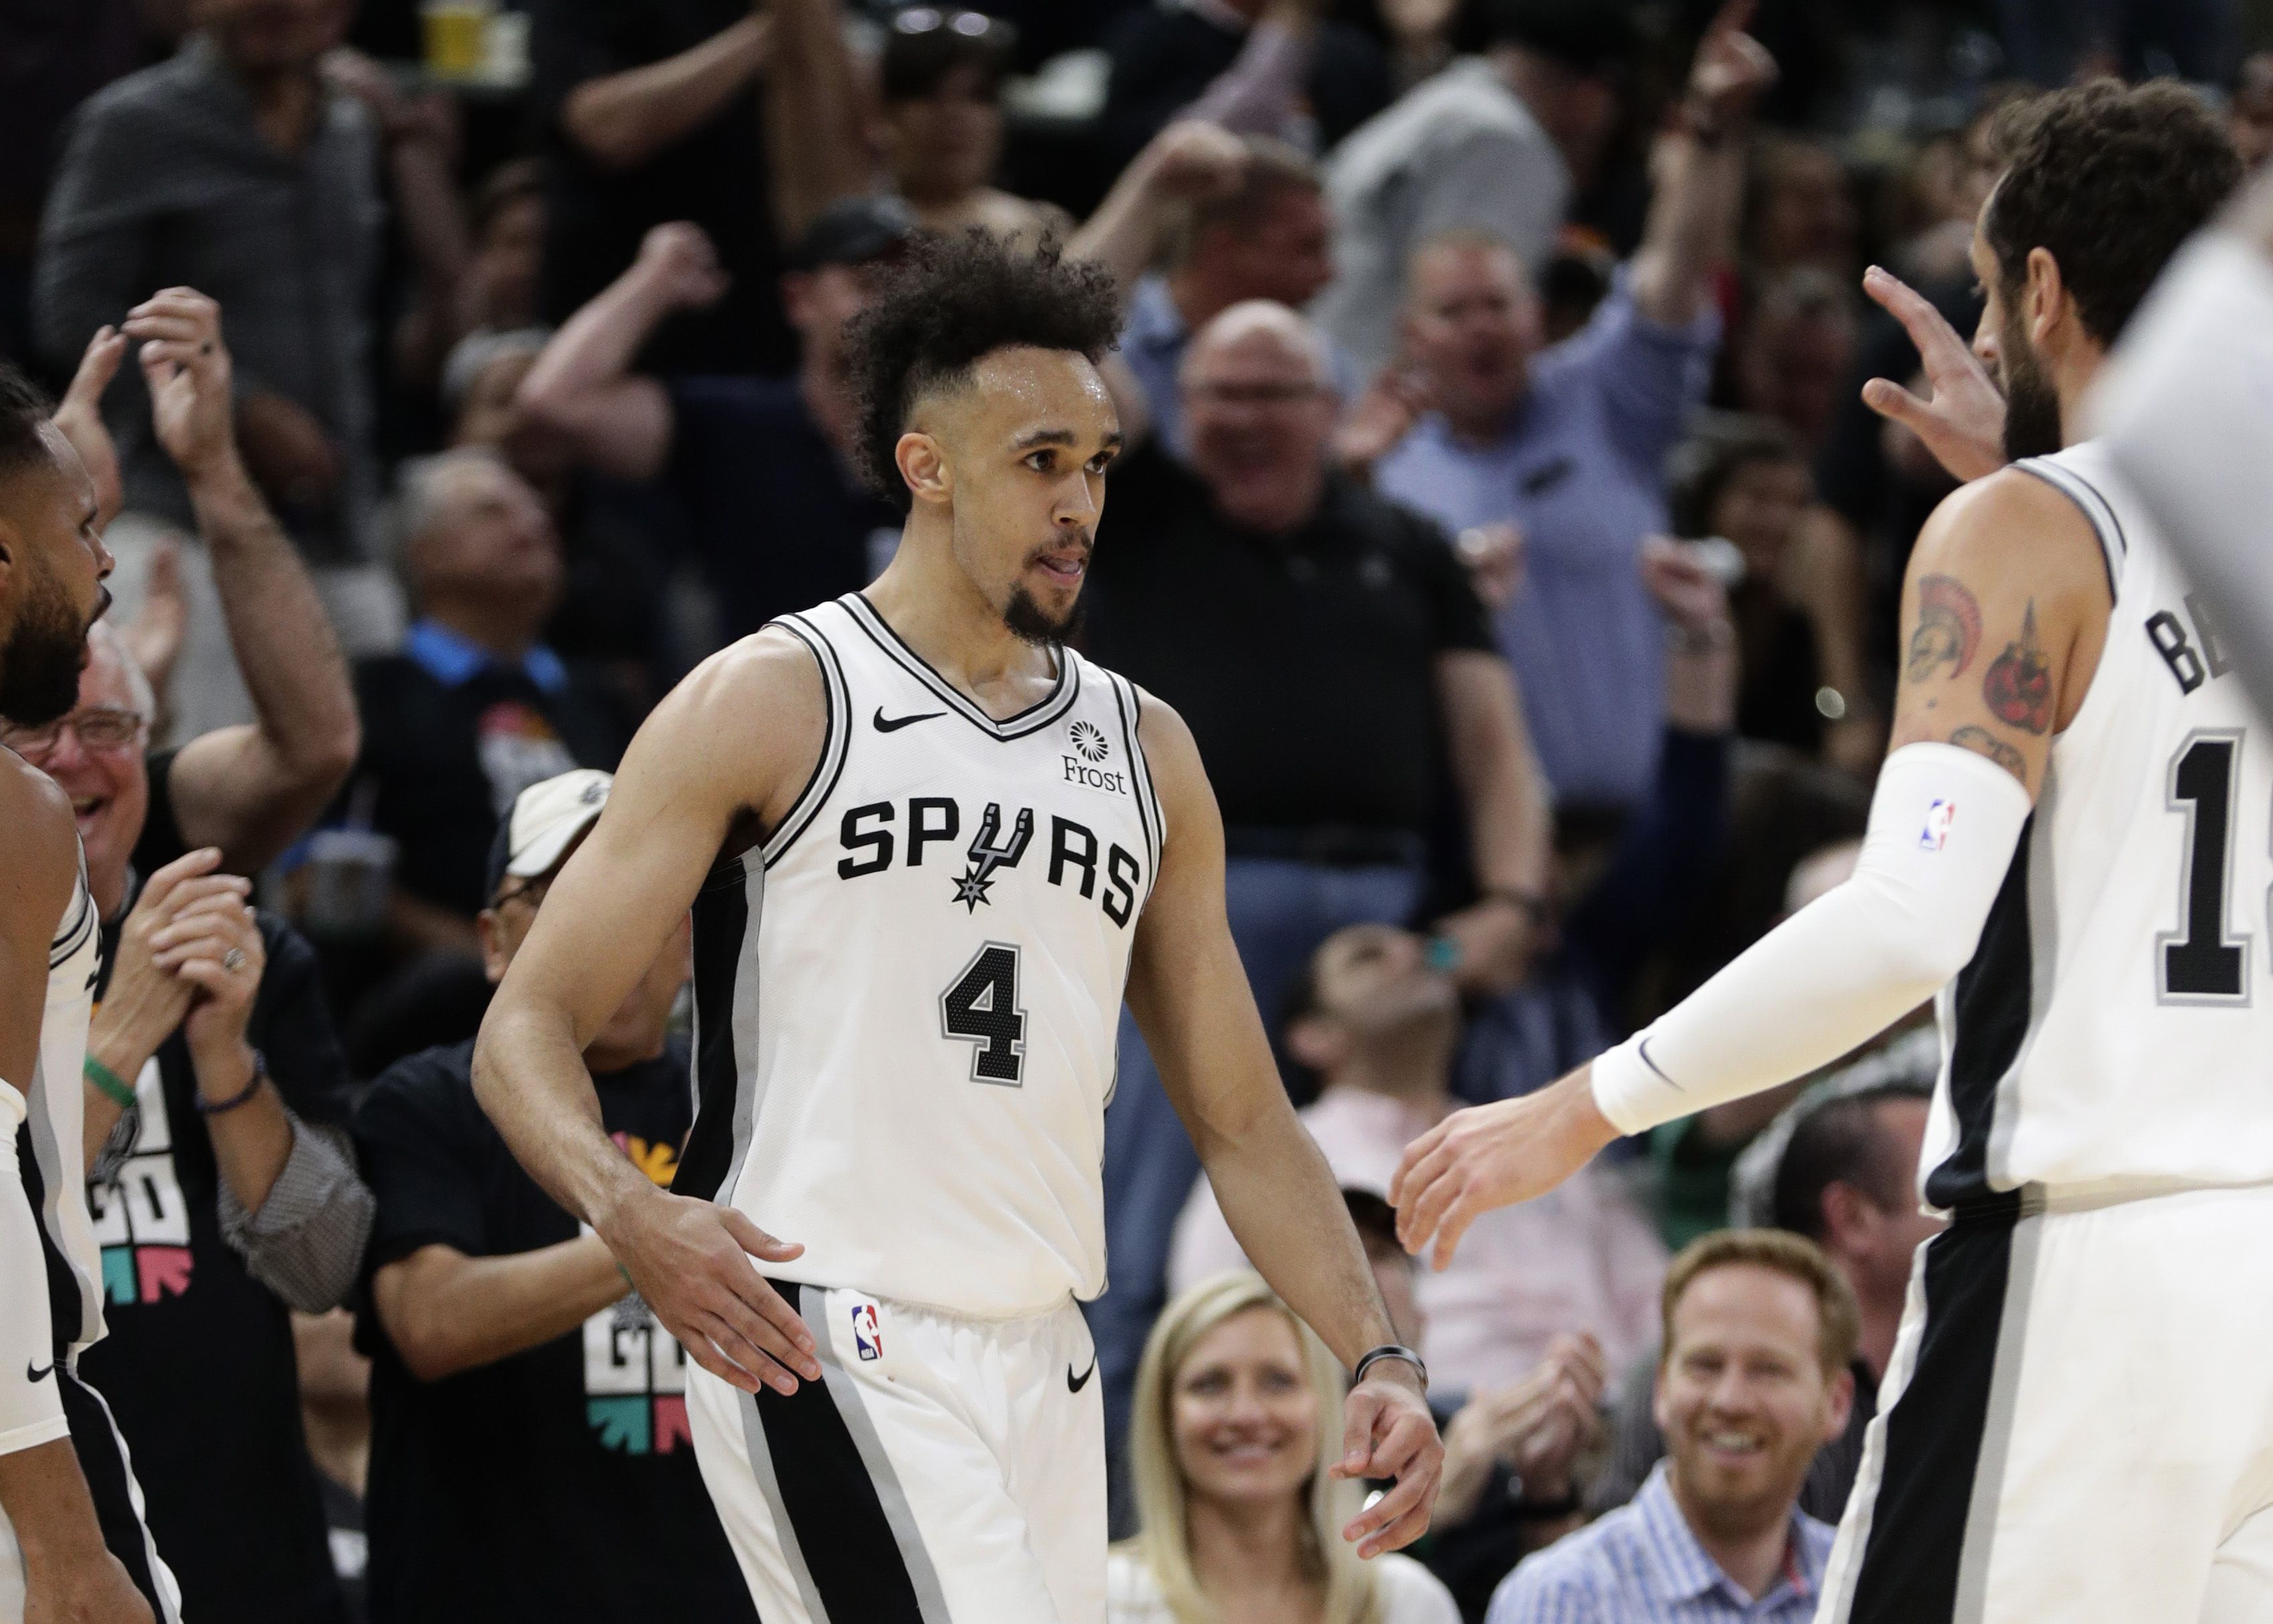 PRECISA DE UM MILAGRE: San Antonio Spurs -  Com um elenco considerado fraco após as saídas de DeMar DeRozan e Patty Mills, os Spurs não devem conseguir ir para os Playoffs e já pensarão na renovação de boa parte do elenco para o futuro.